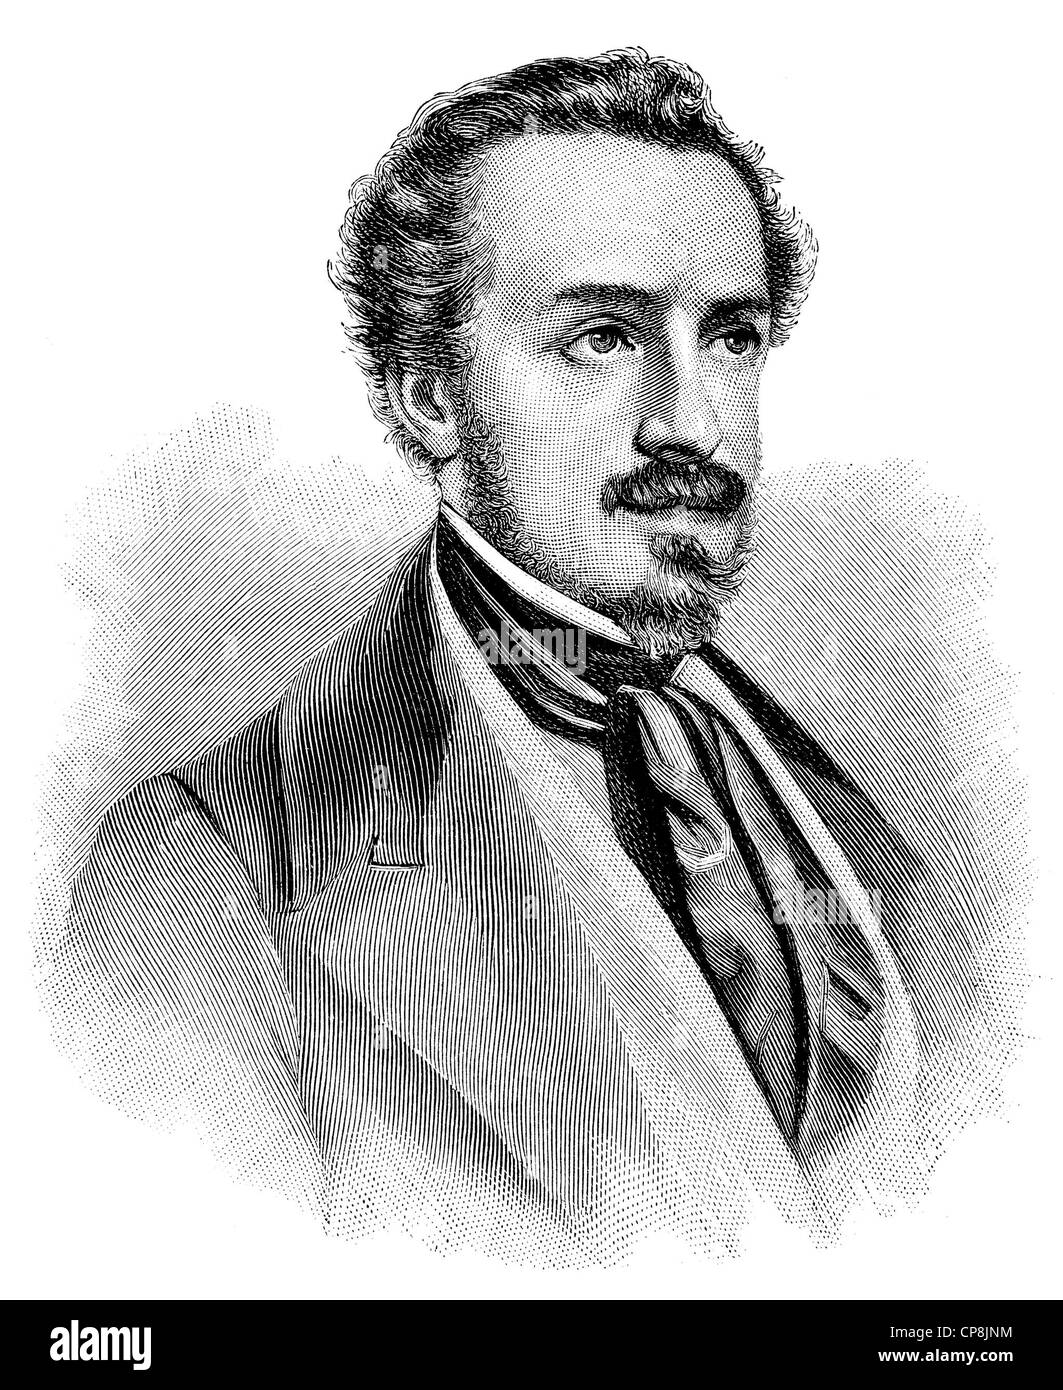 Giuseppe Giusti, 1809 - 1850, an Italian poet, satirist and politician, Historische Zeichnung aus dem 19. Jahrhundert, Portait v Stock Photo